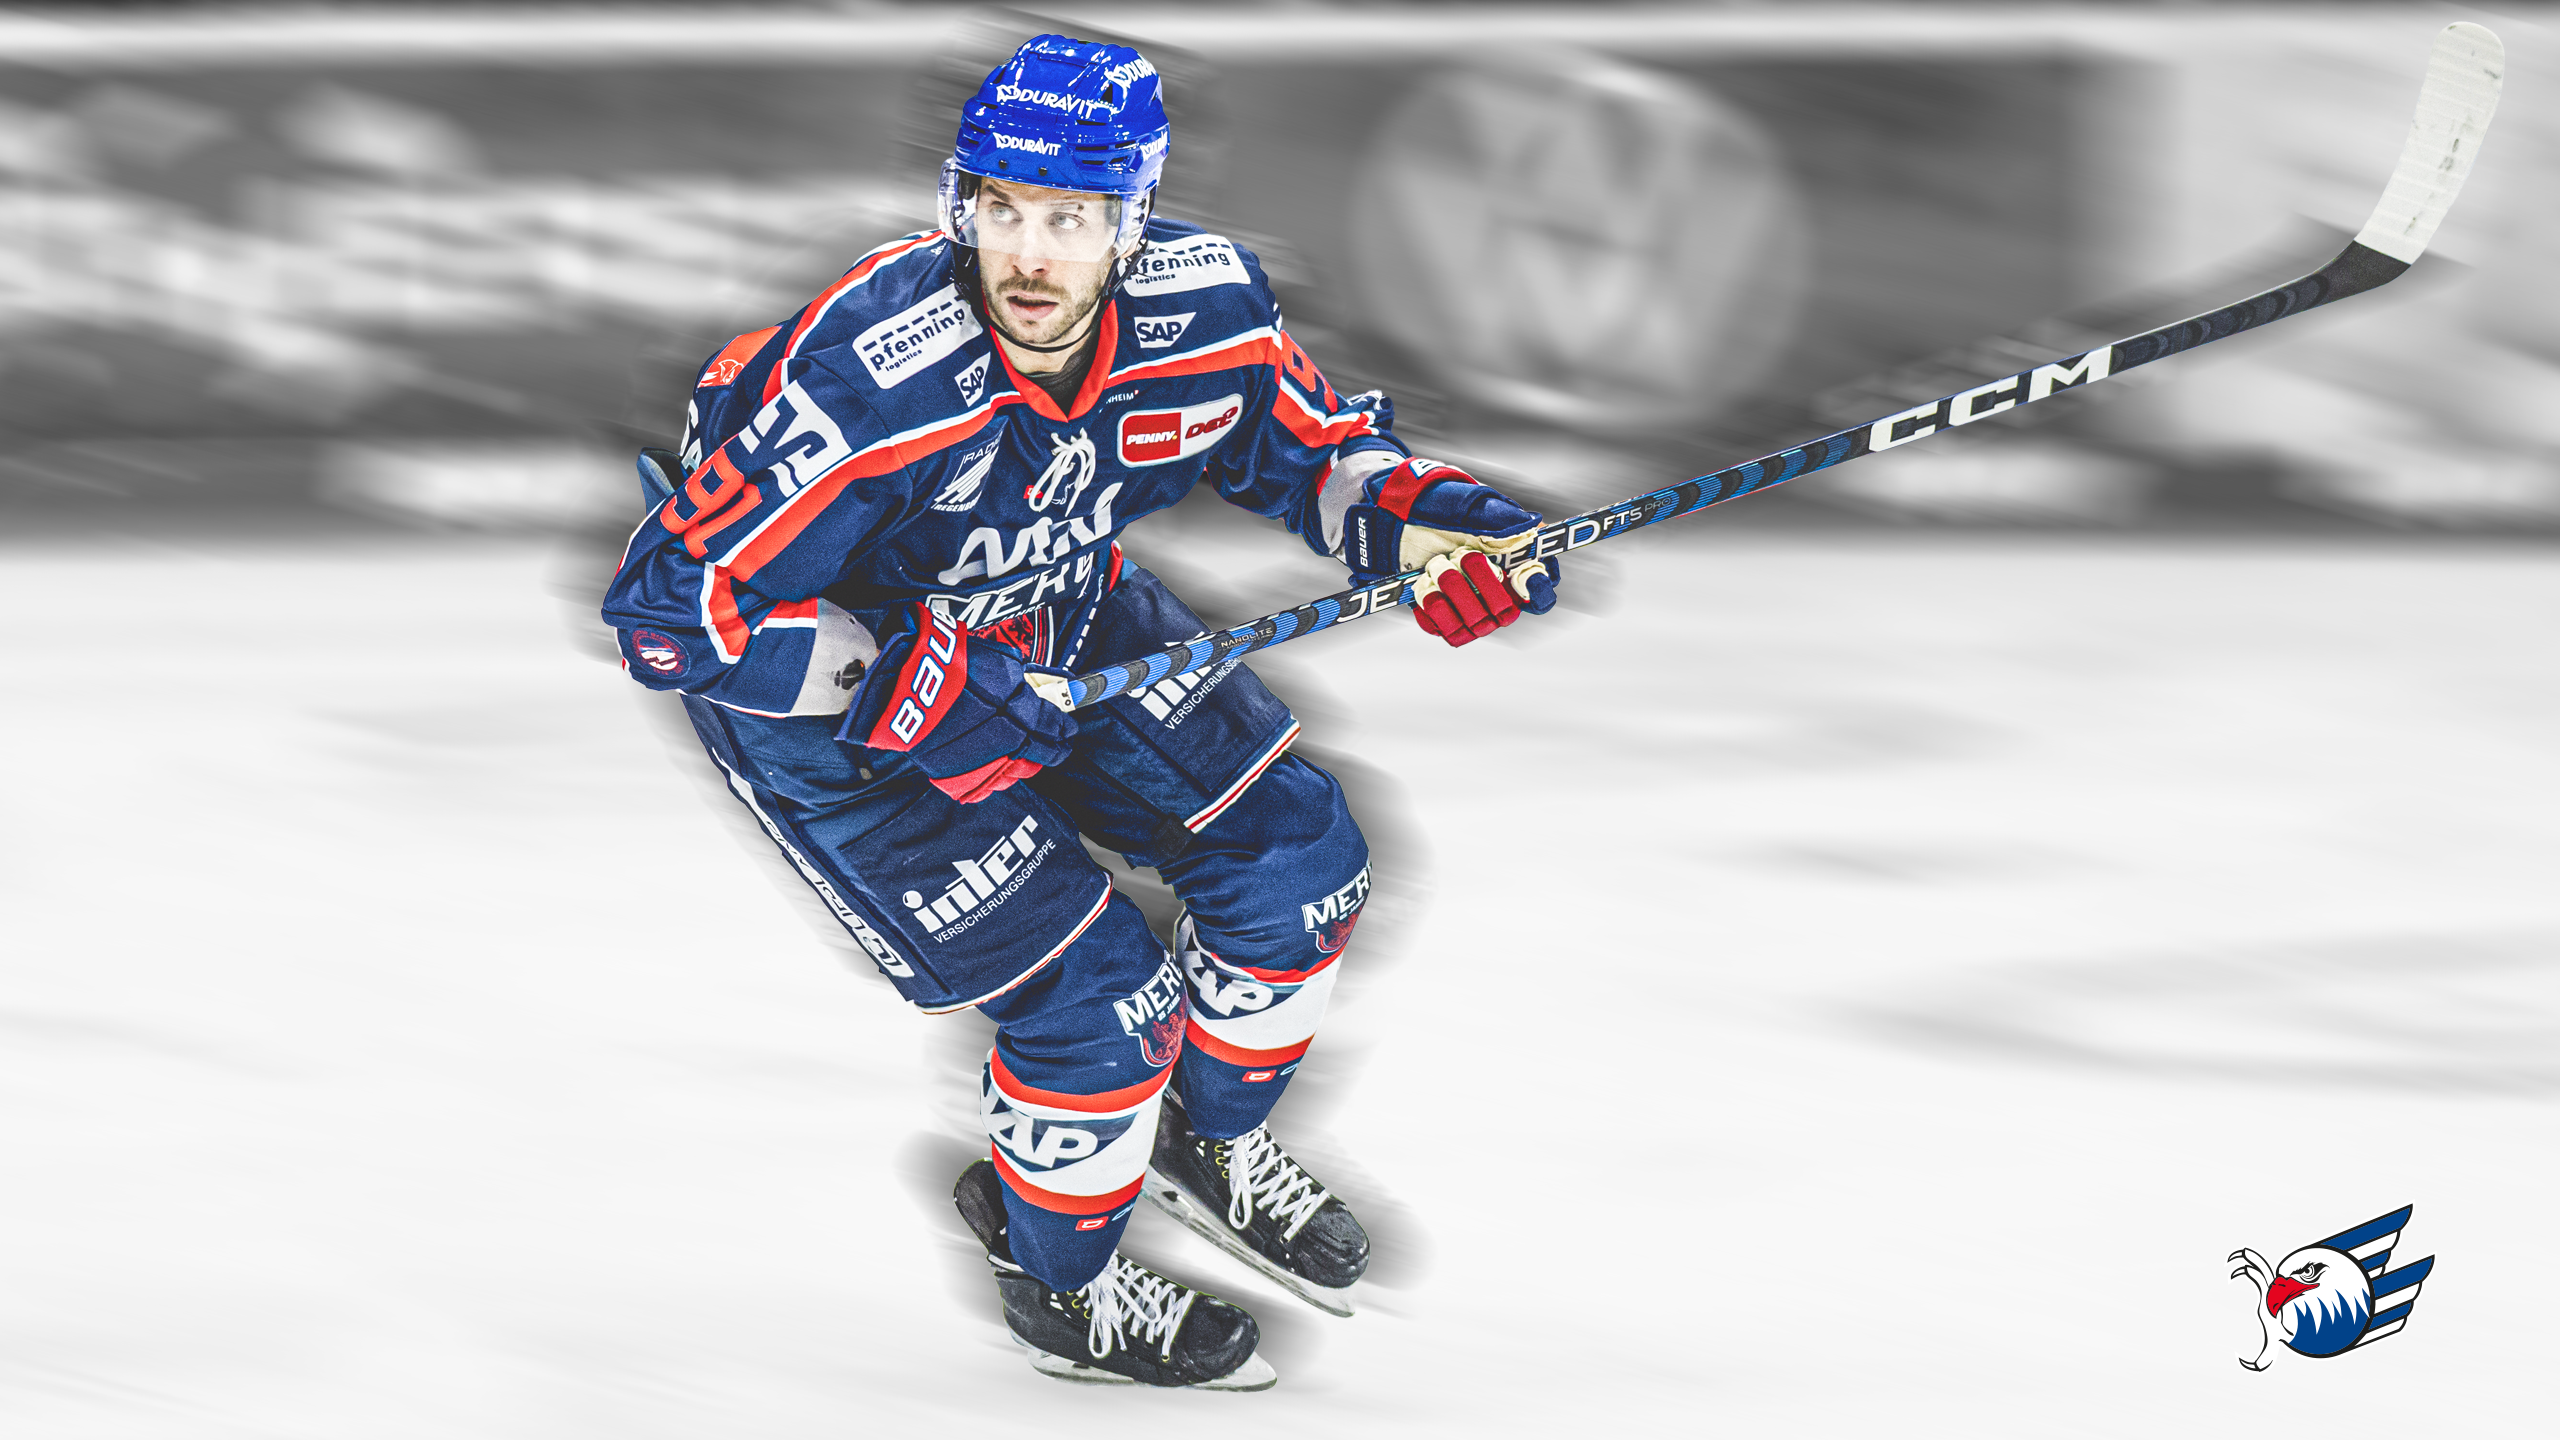  Eishockey Hintergrundbild 2560x1440. Downloads Adler Mannheim